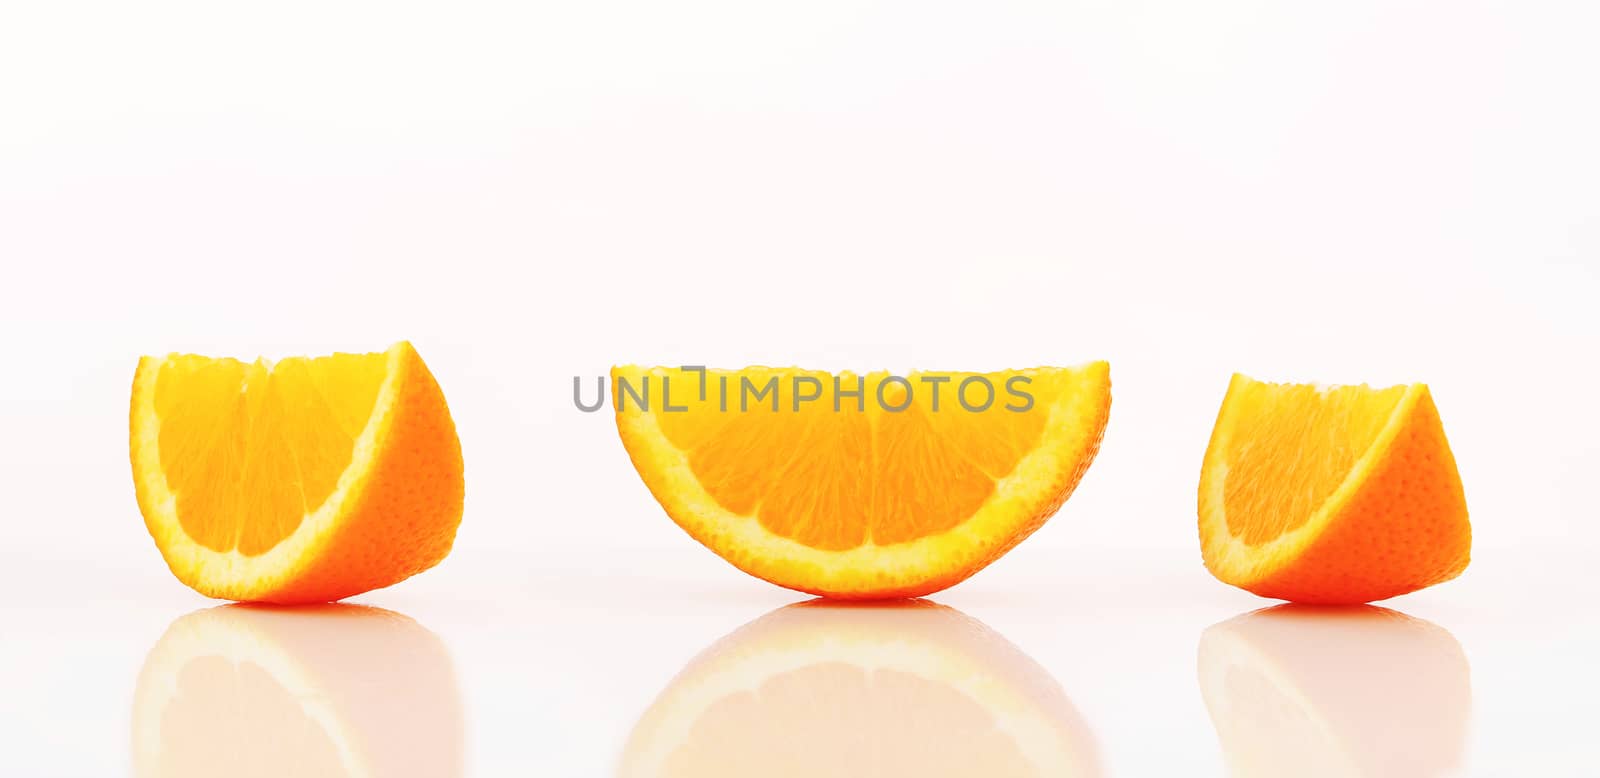 Orange wedges by Digifoodstock